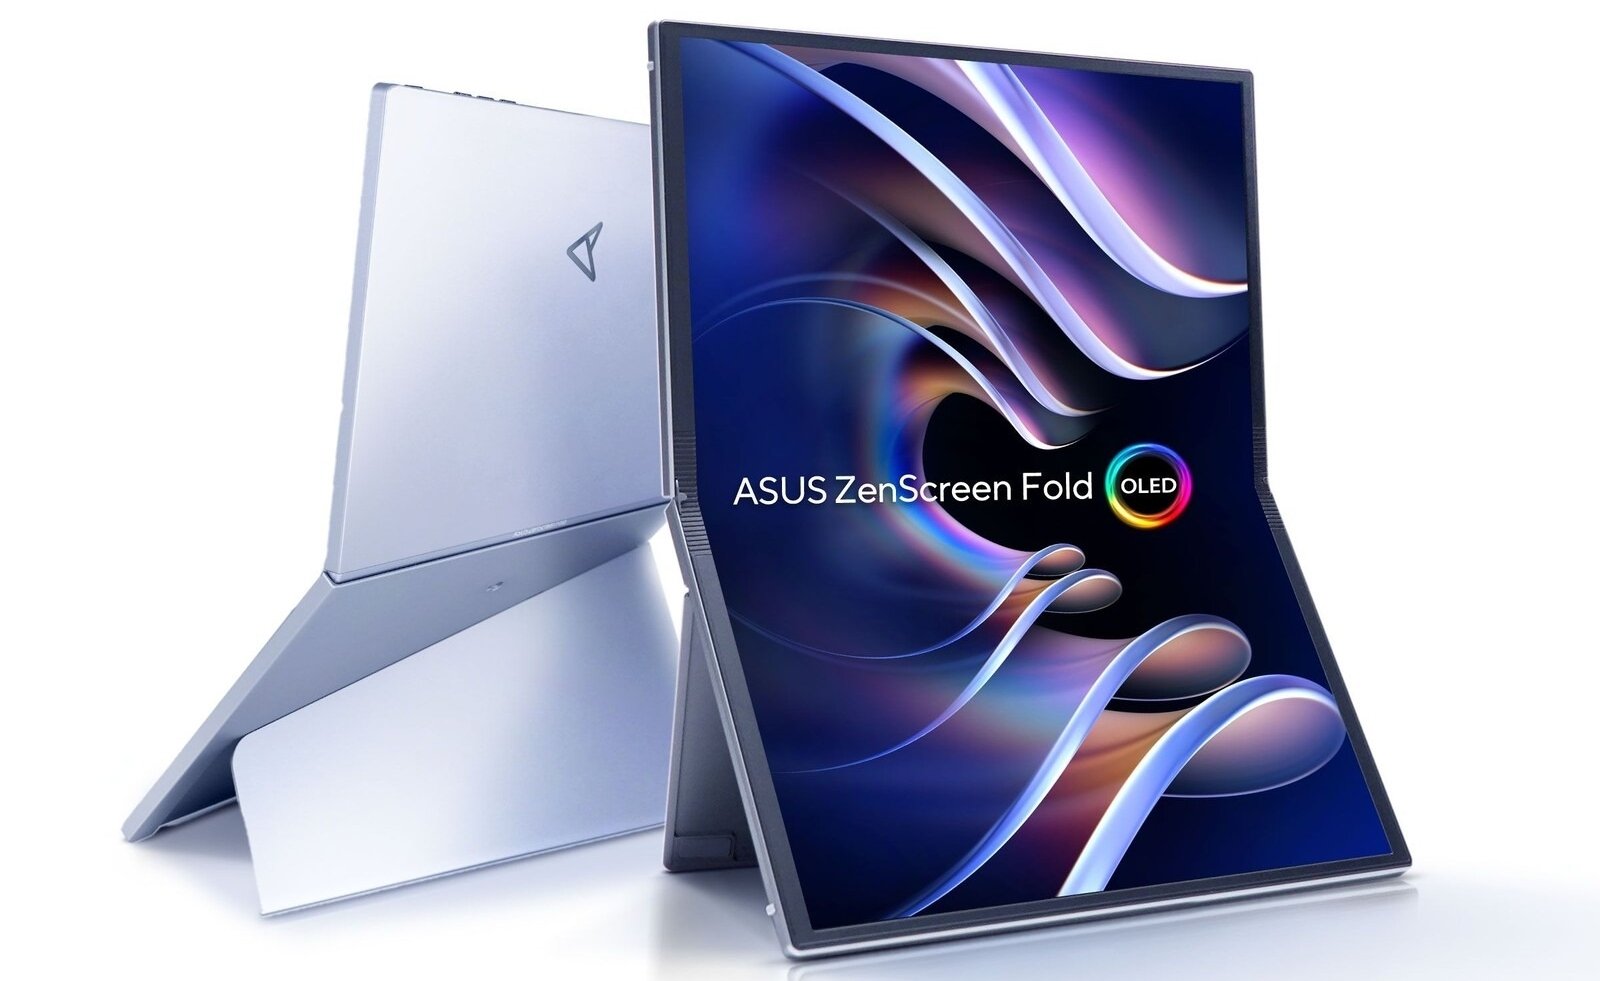 Las pantallas plegables también son accesorios: así es la ASUS ZenScreen Fold OLED, el primer monitor plegable del mundo